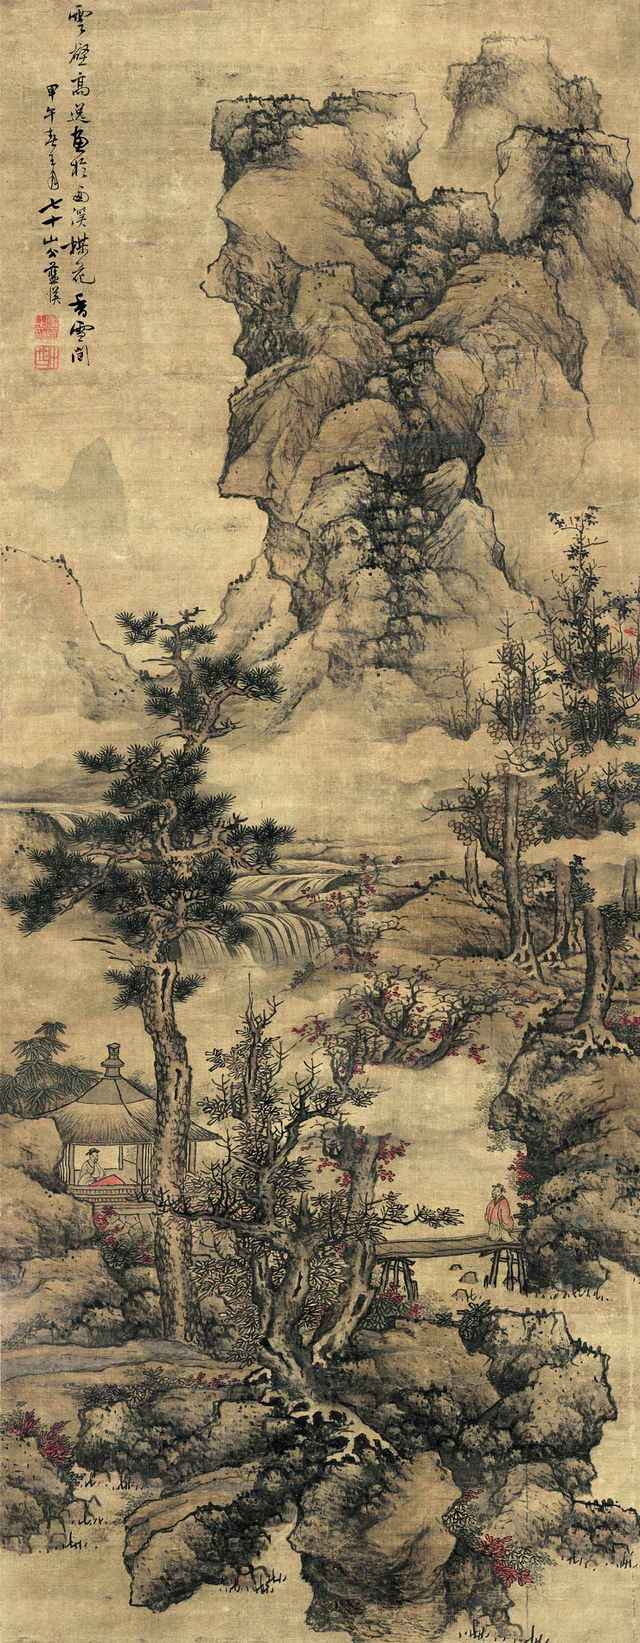 蓝瑛:熔铸古今,独开门庭的武林派首领的山水画